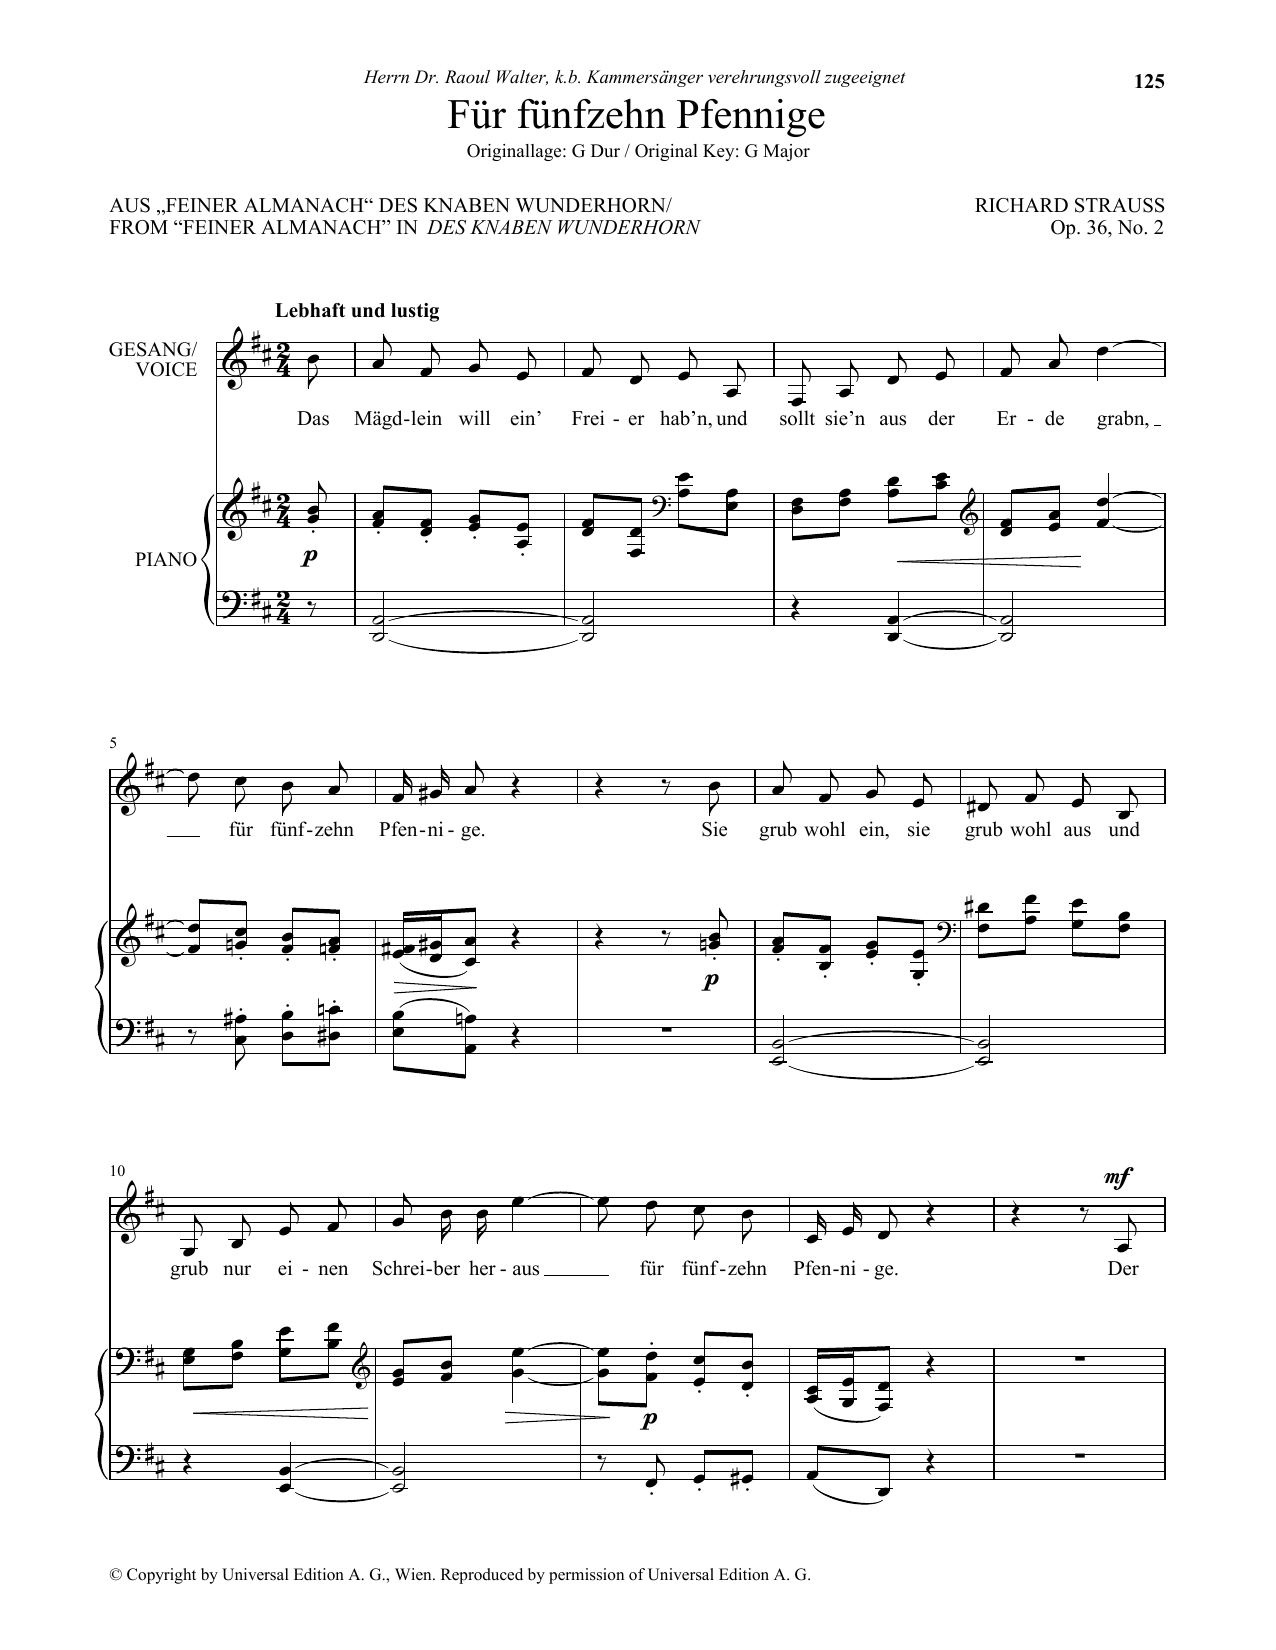 Download Richard Strauss Fur Funfzehn Pfennige (Low Voice) Sheet Music